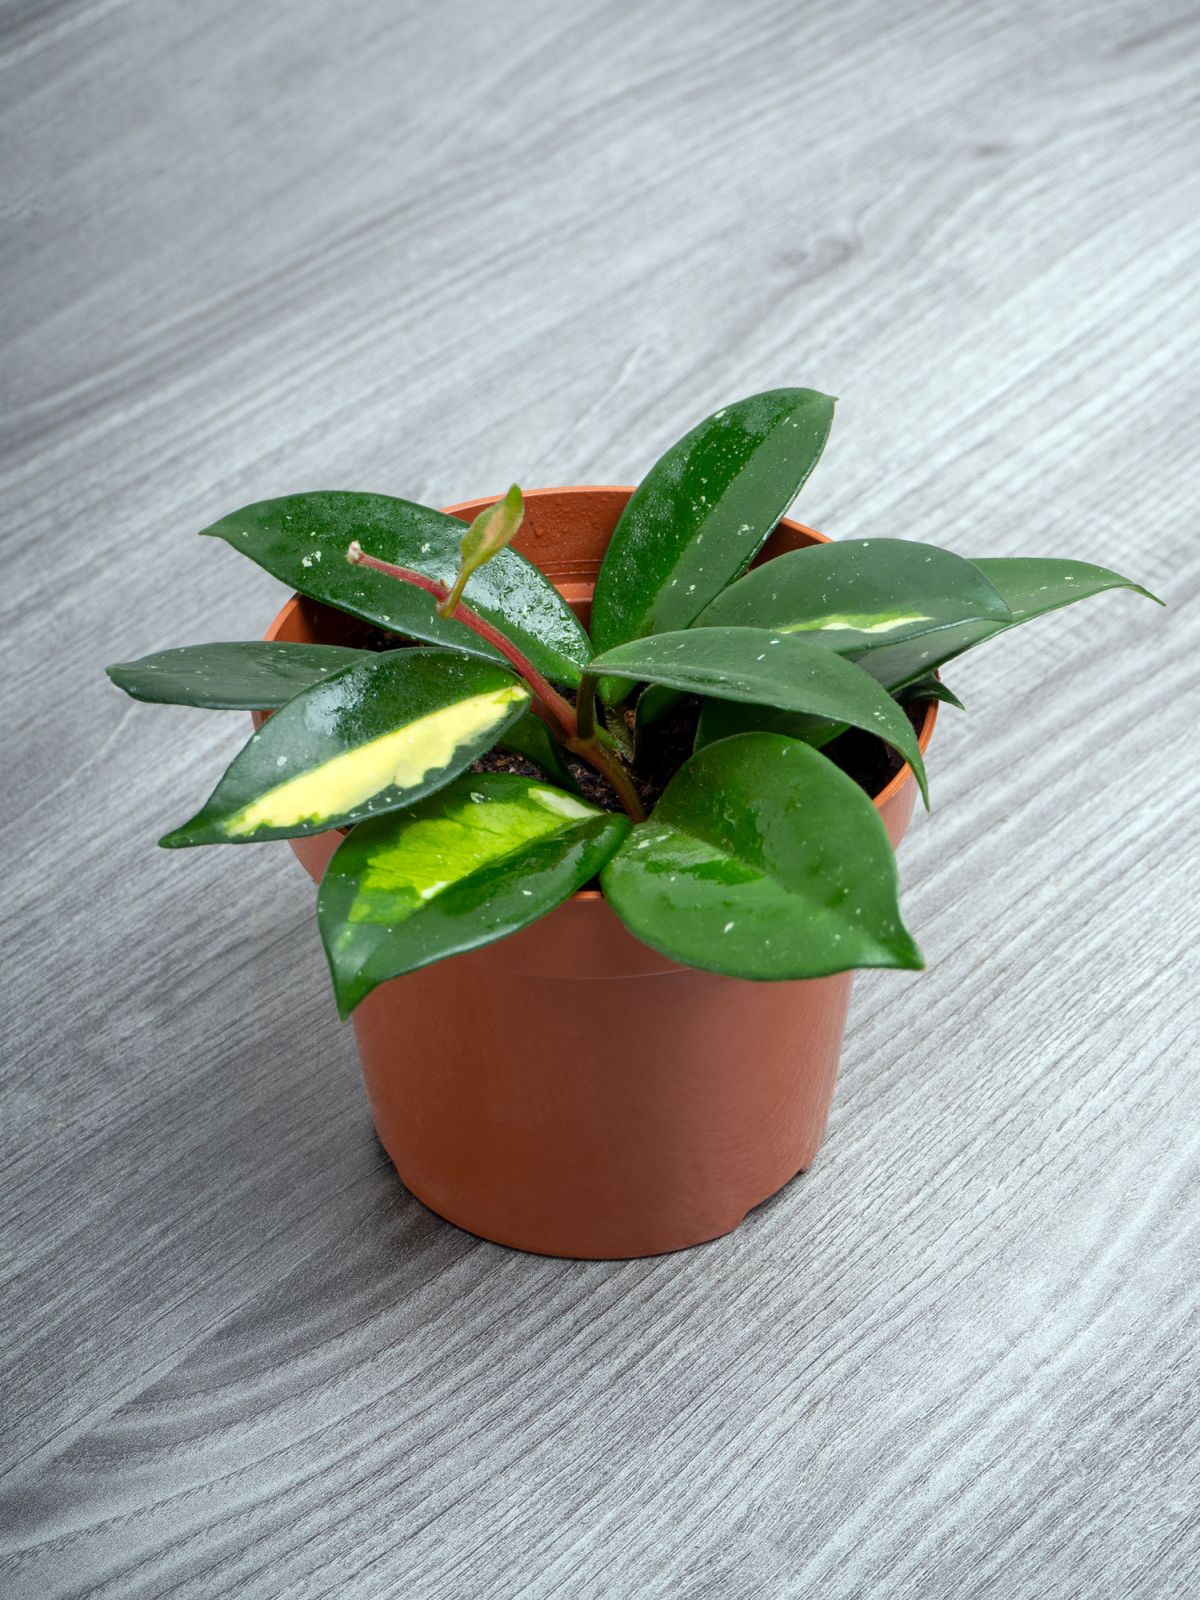 Hoya (Wax Plant)